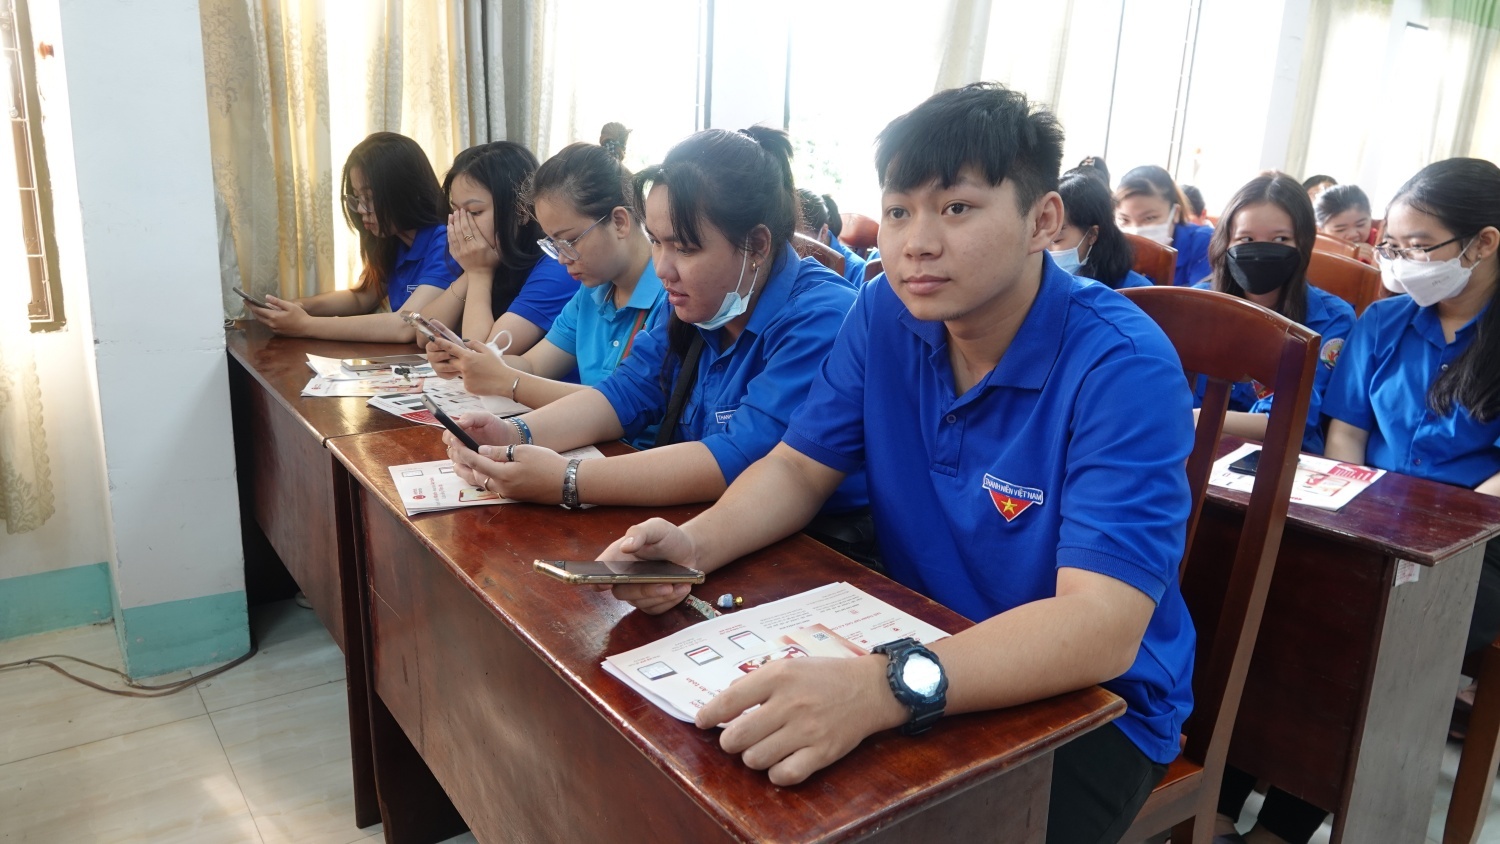 Tuổi trẻ Bình Định tổ chức nhiều hoạt động hưởng ứng ngày Chuyển đổi số quốc gia  - ảnh 1